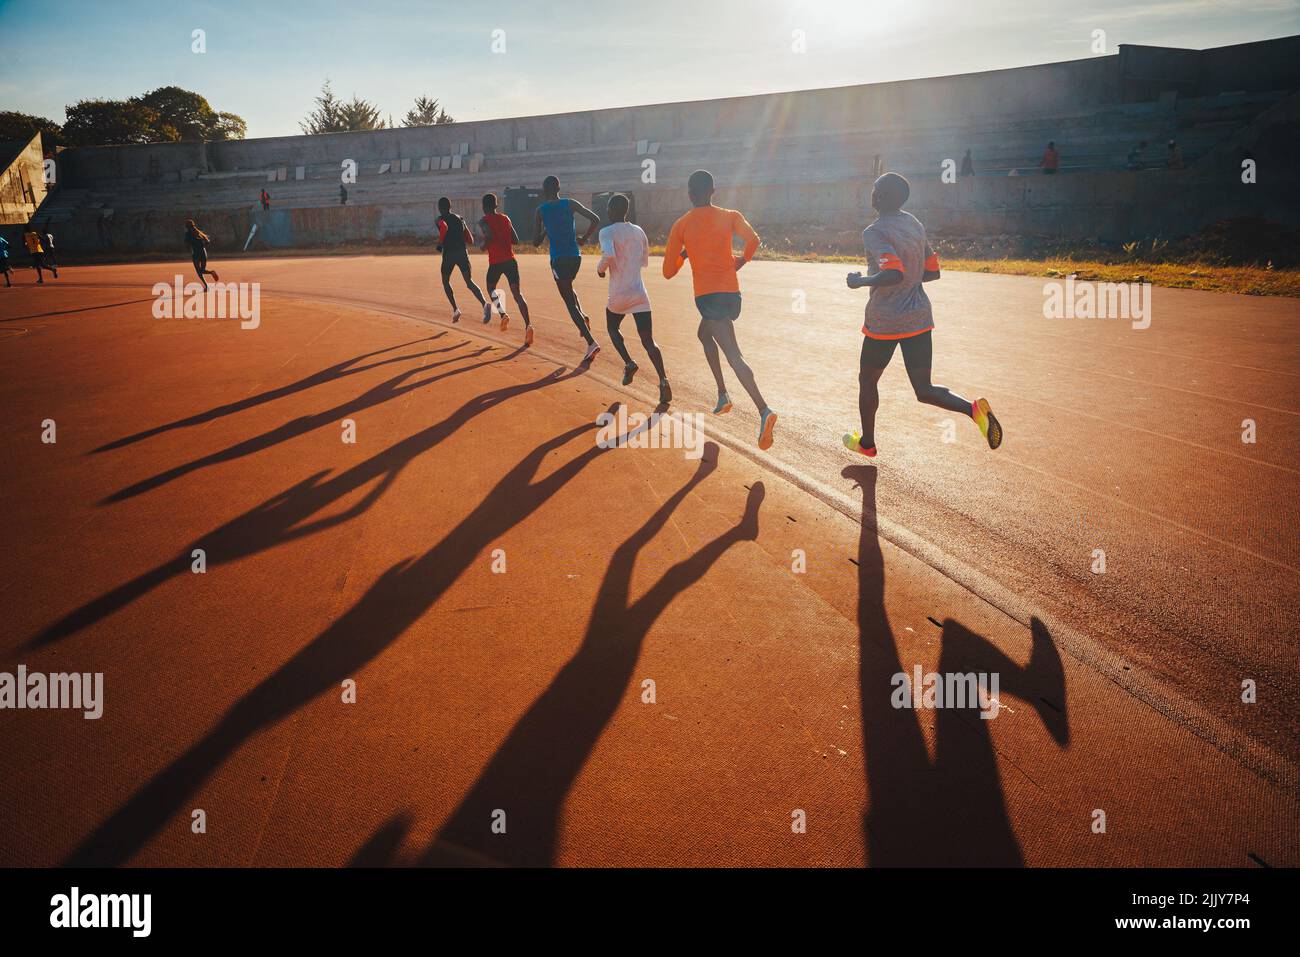 Les coureurs kenyans s'entraînent sur le circuit d'athlétisme de la ville d'Eldoret près d'Iten, le centre de la course d'endurance mondiale. Préparation au Kenya pour Banque D'Images